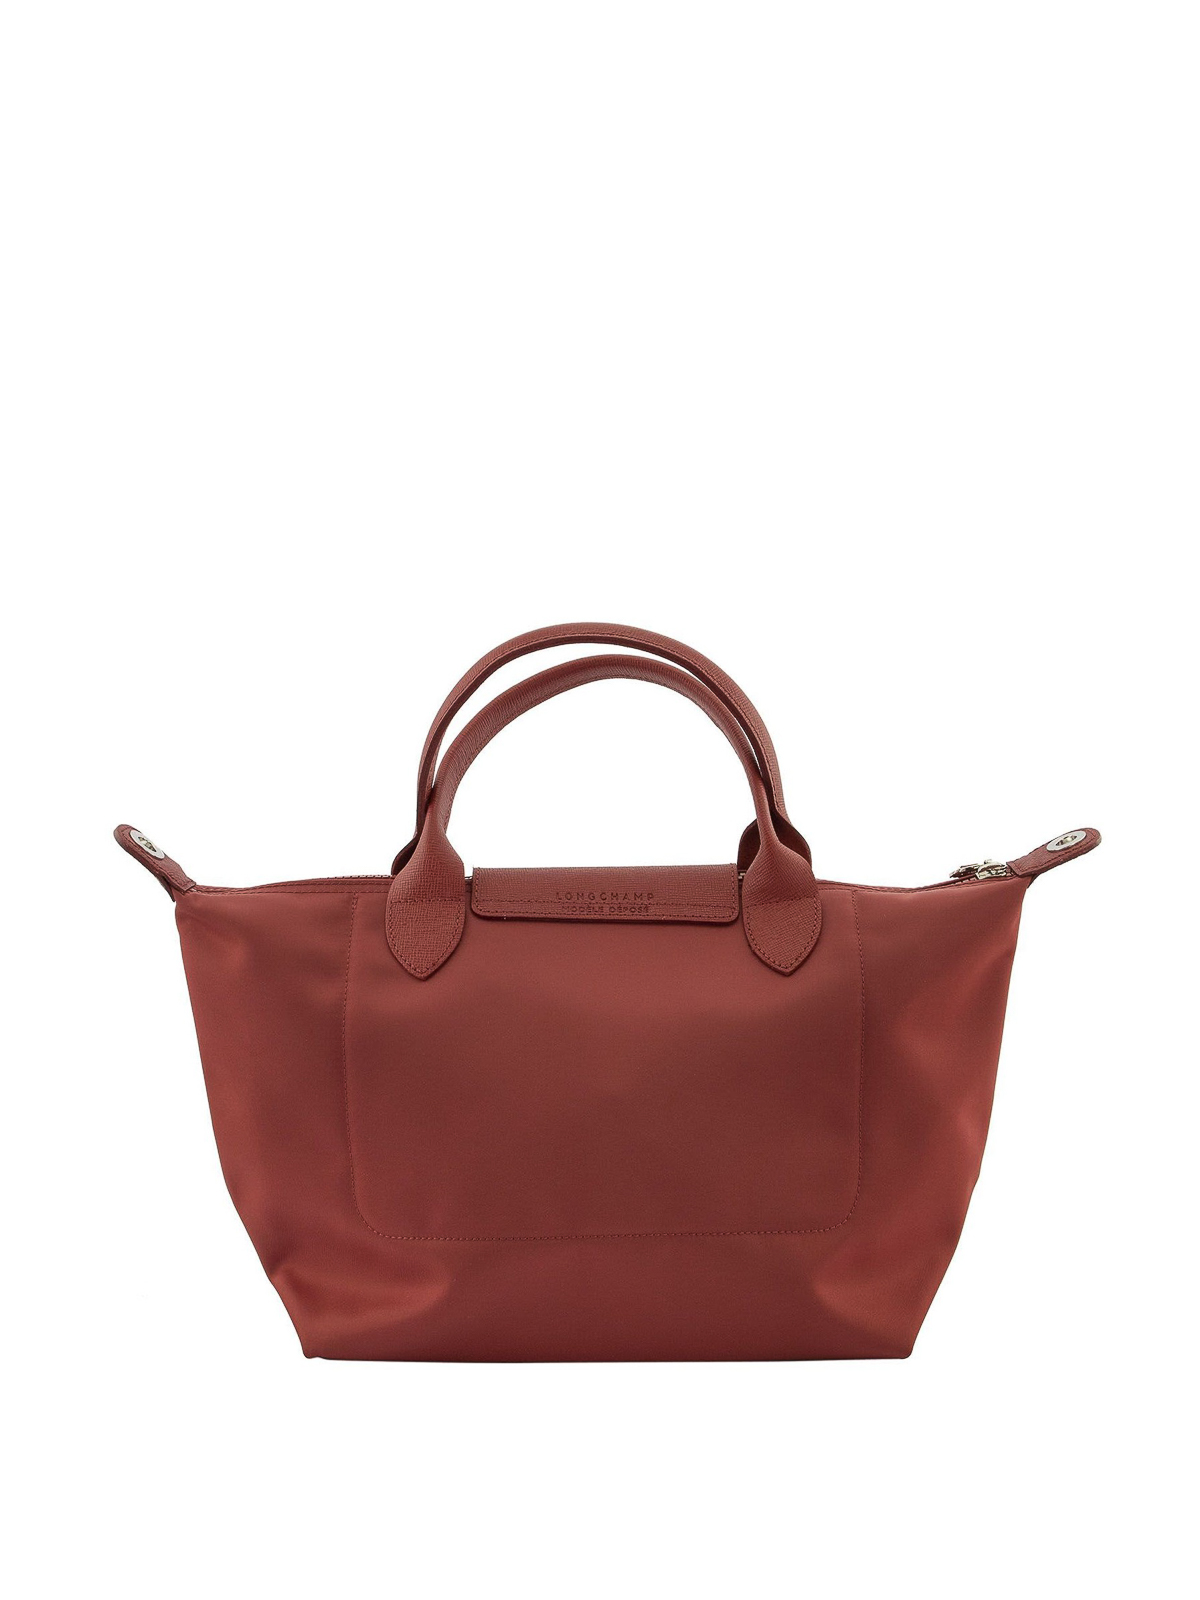 Longchamp Red Leather Medium SIze Shoulder Bag